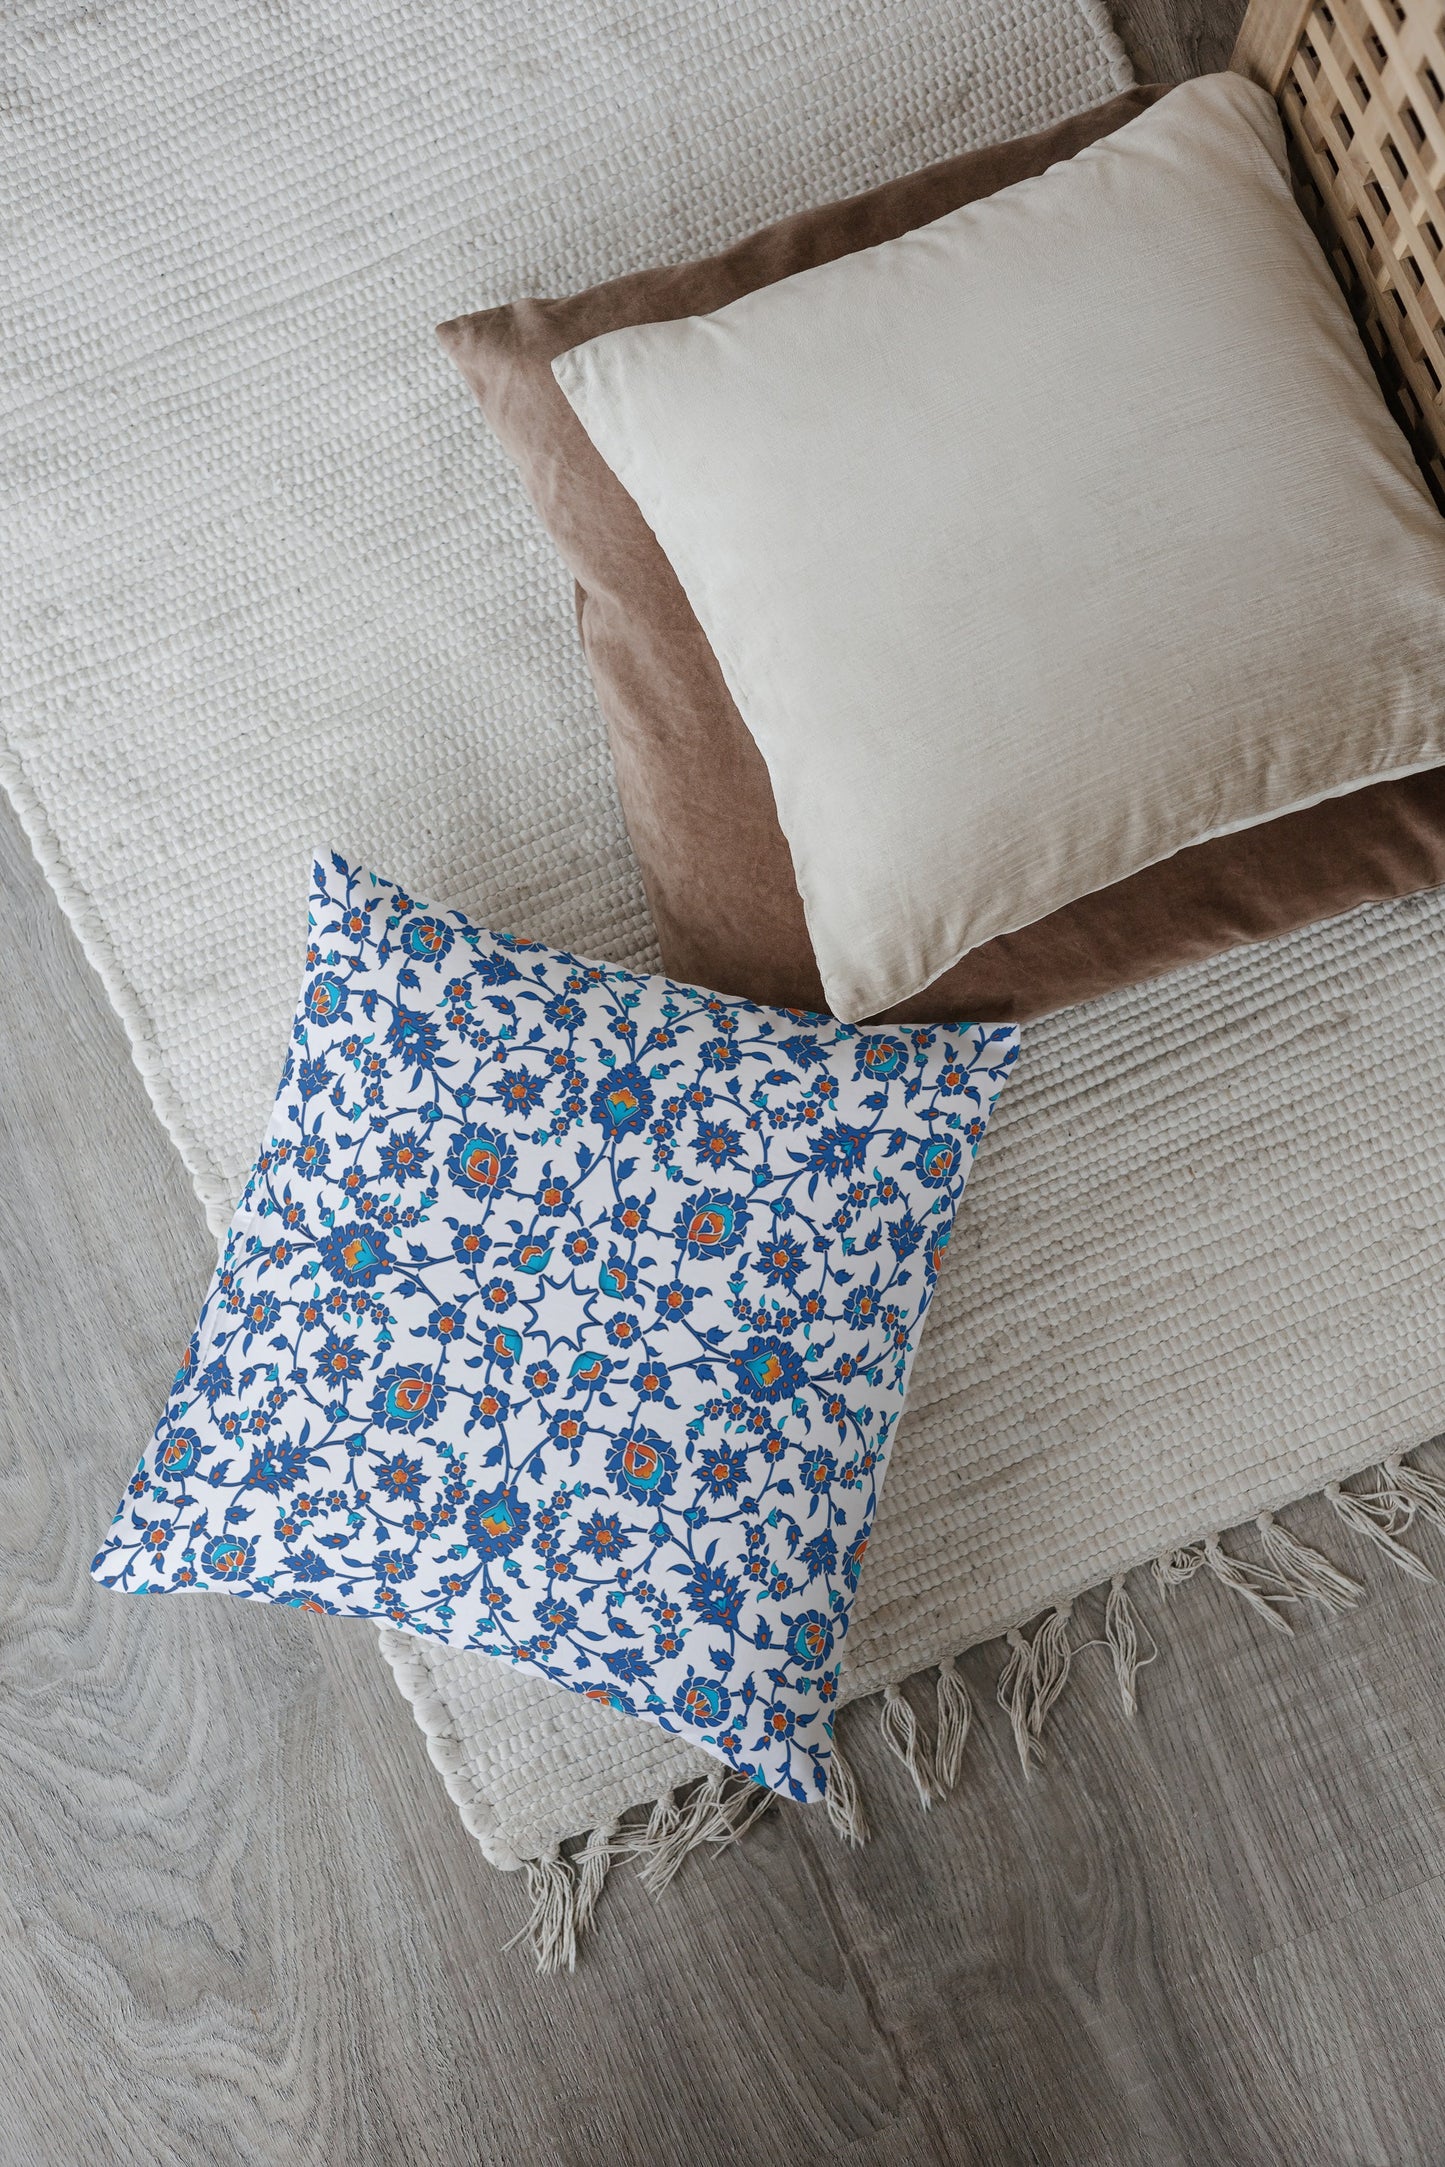 Izmir Ottoman Outdoor Pillows Cobalt Blue Red & White